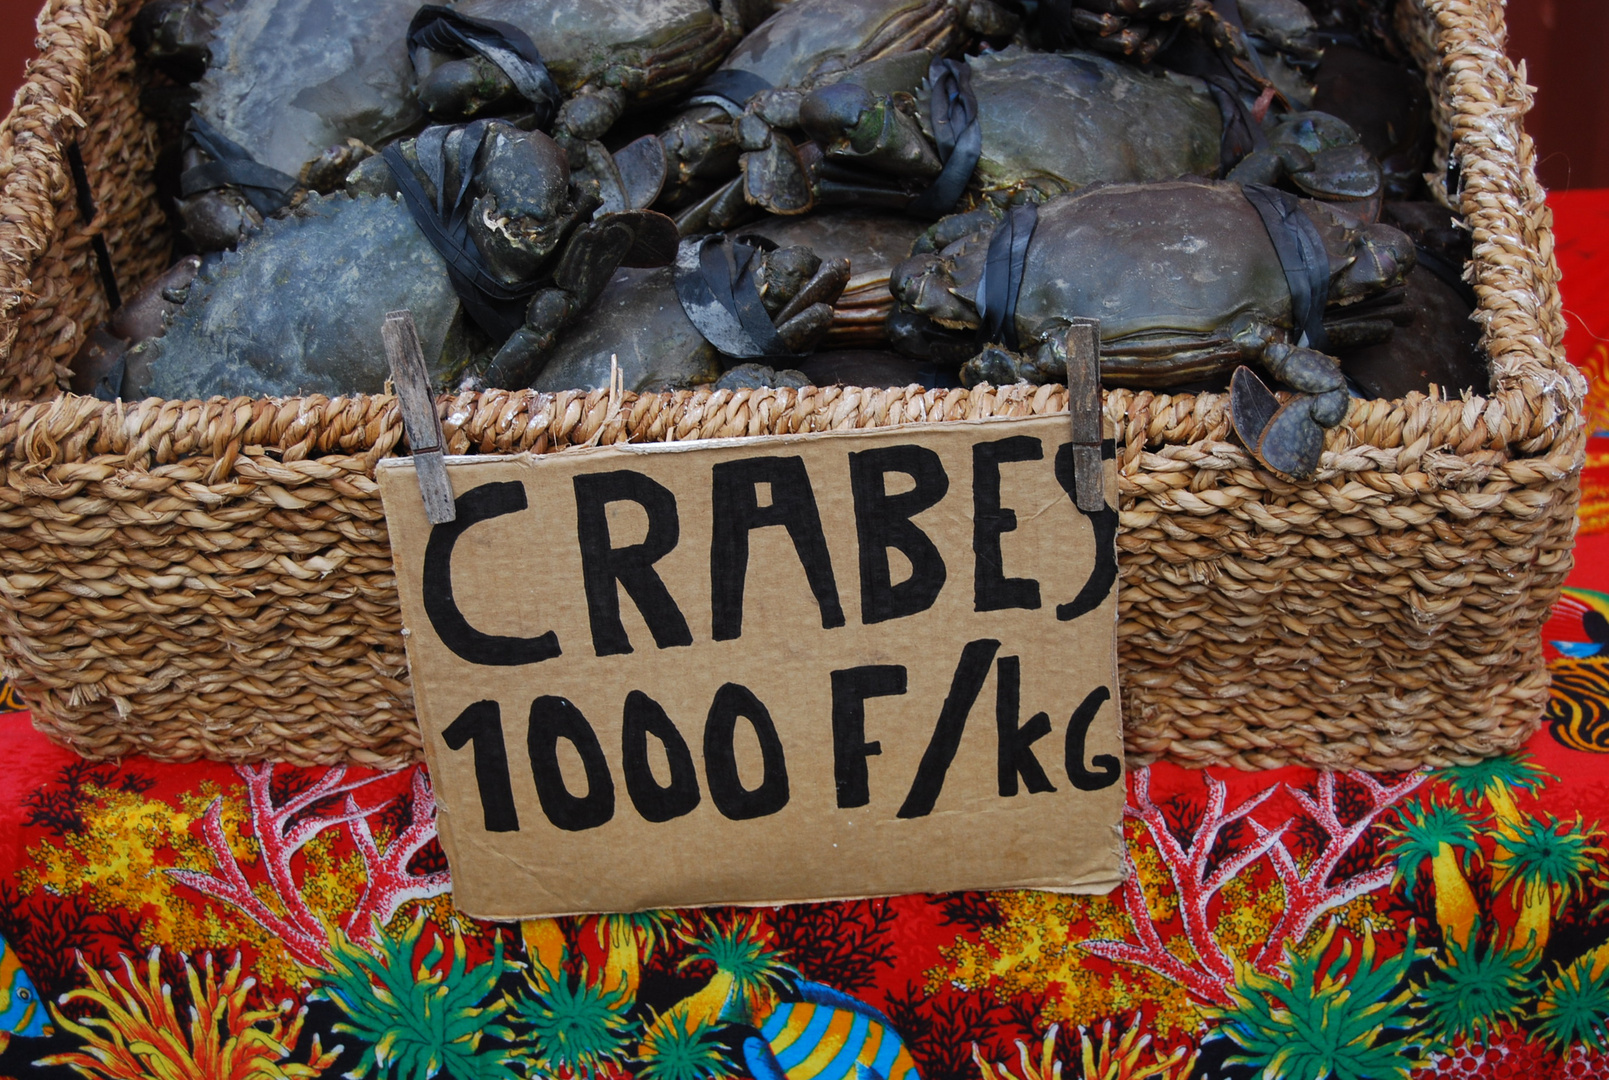 Crabes au marché